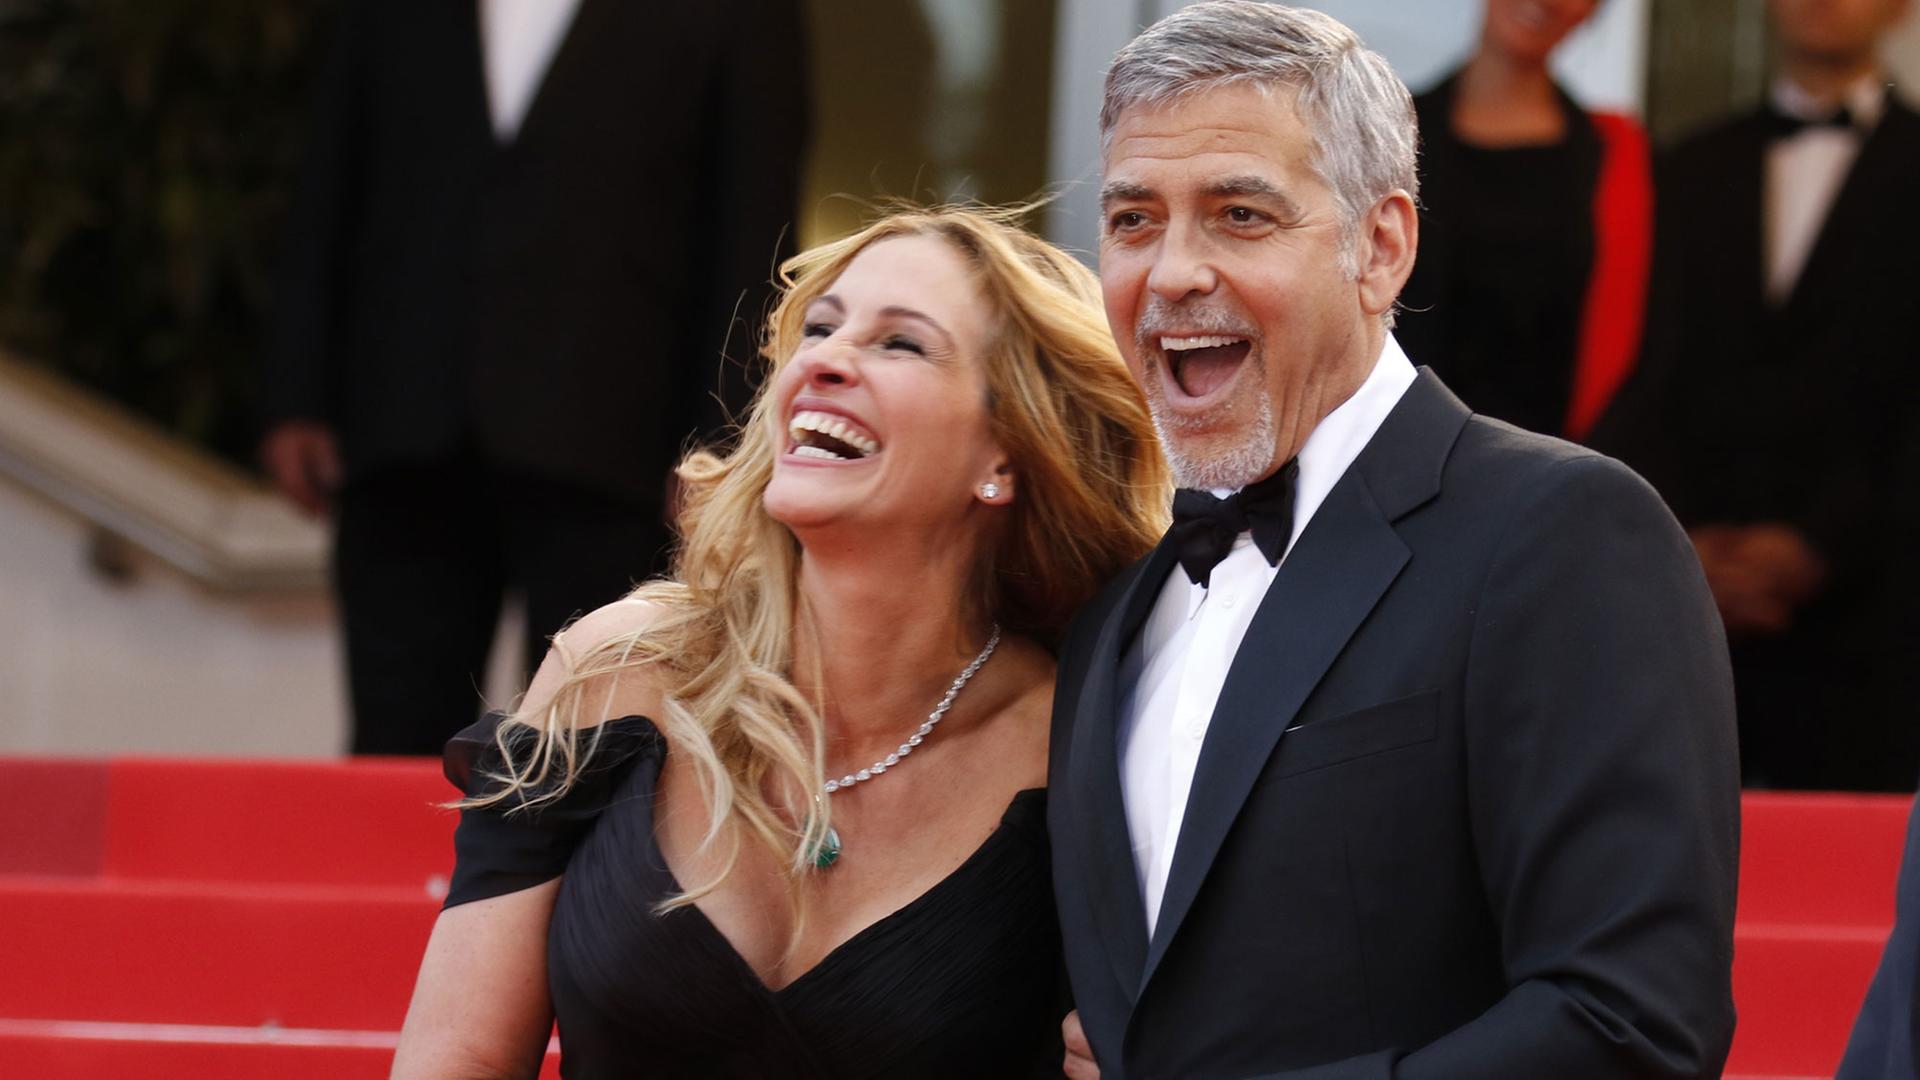 Die US-Schauspieler Julia Roberts und George Clooney scherzen am 12.5.2016 bei der Premiere von "Money Monster" von Jodie Foster auf dem Roten Teppich beim Cannes Film Festival.